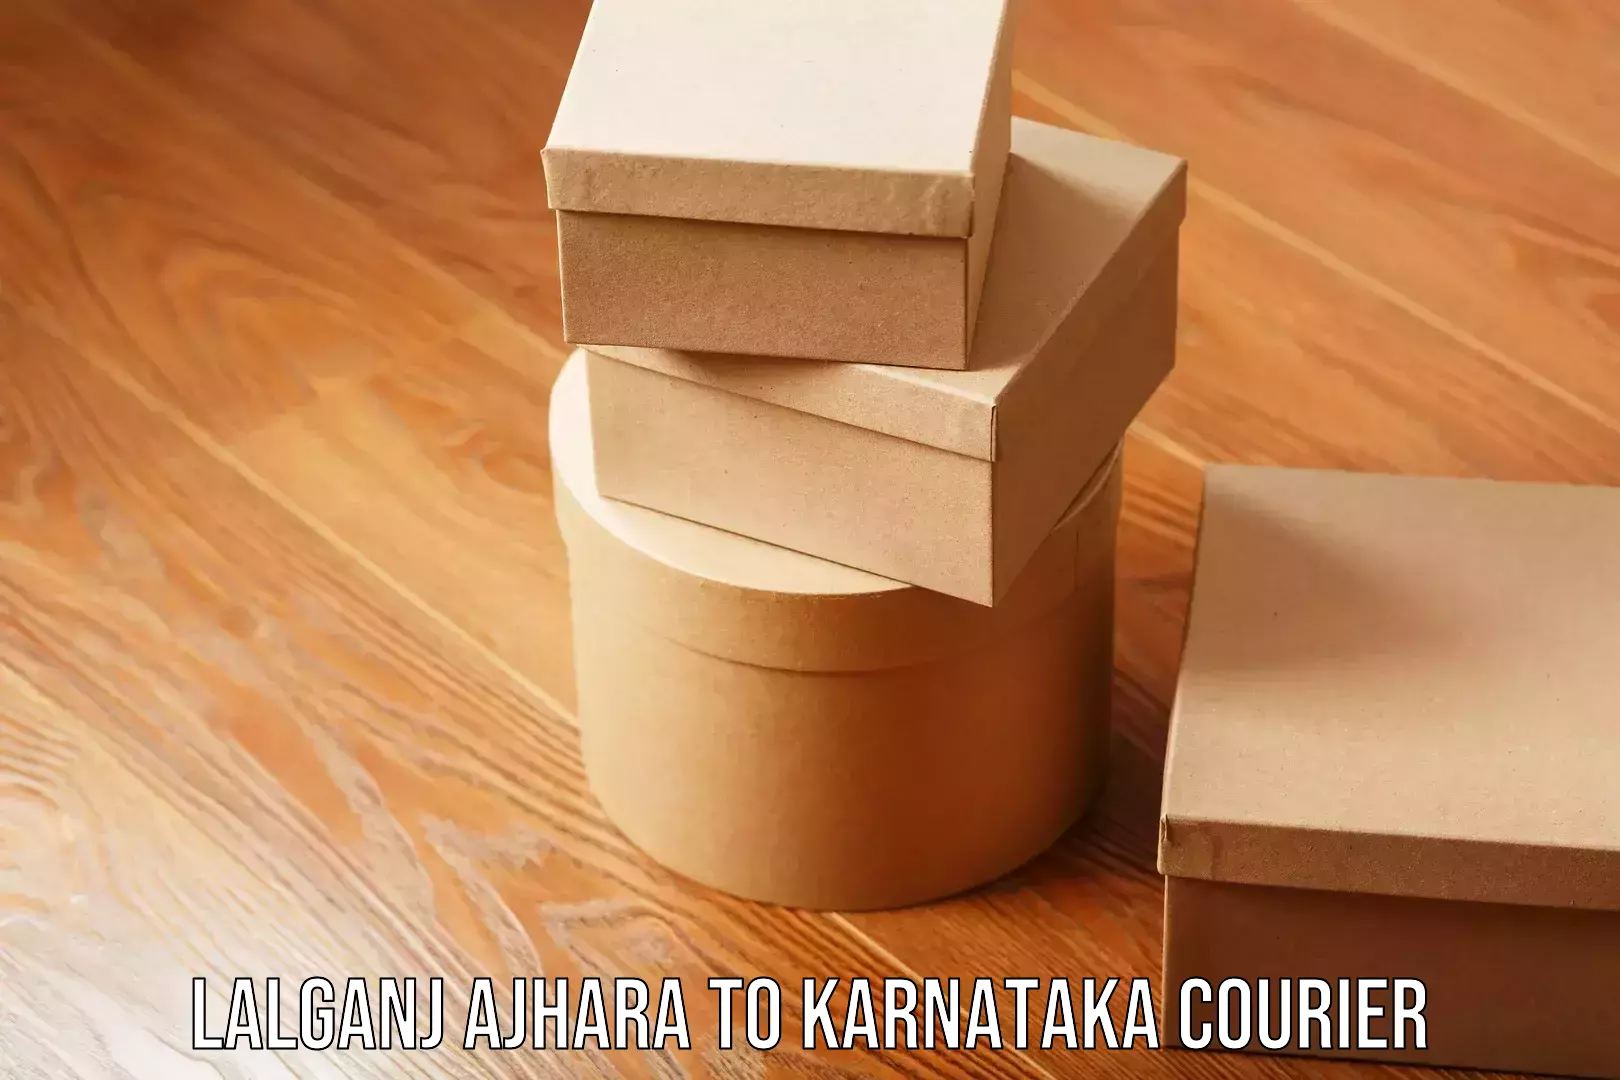 Residential moving experts Lalganj Ajhara to Karnataka